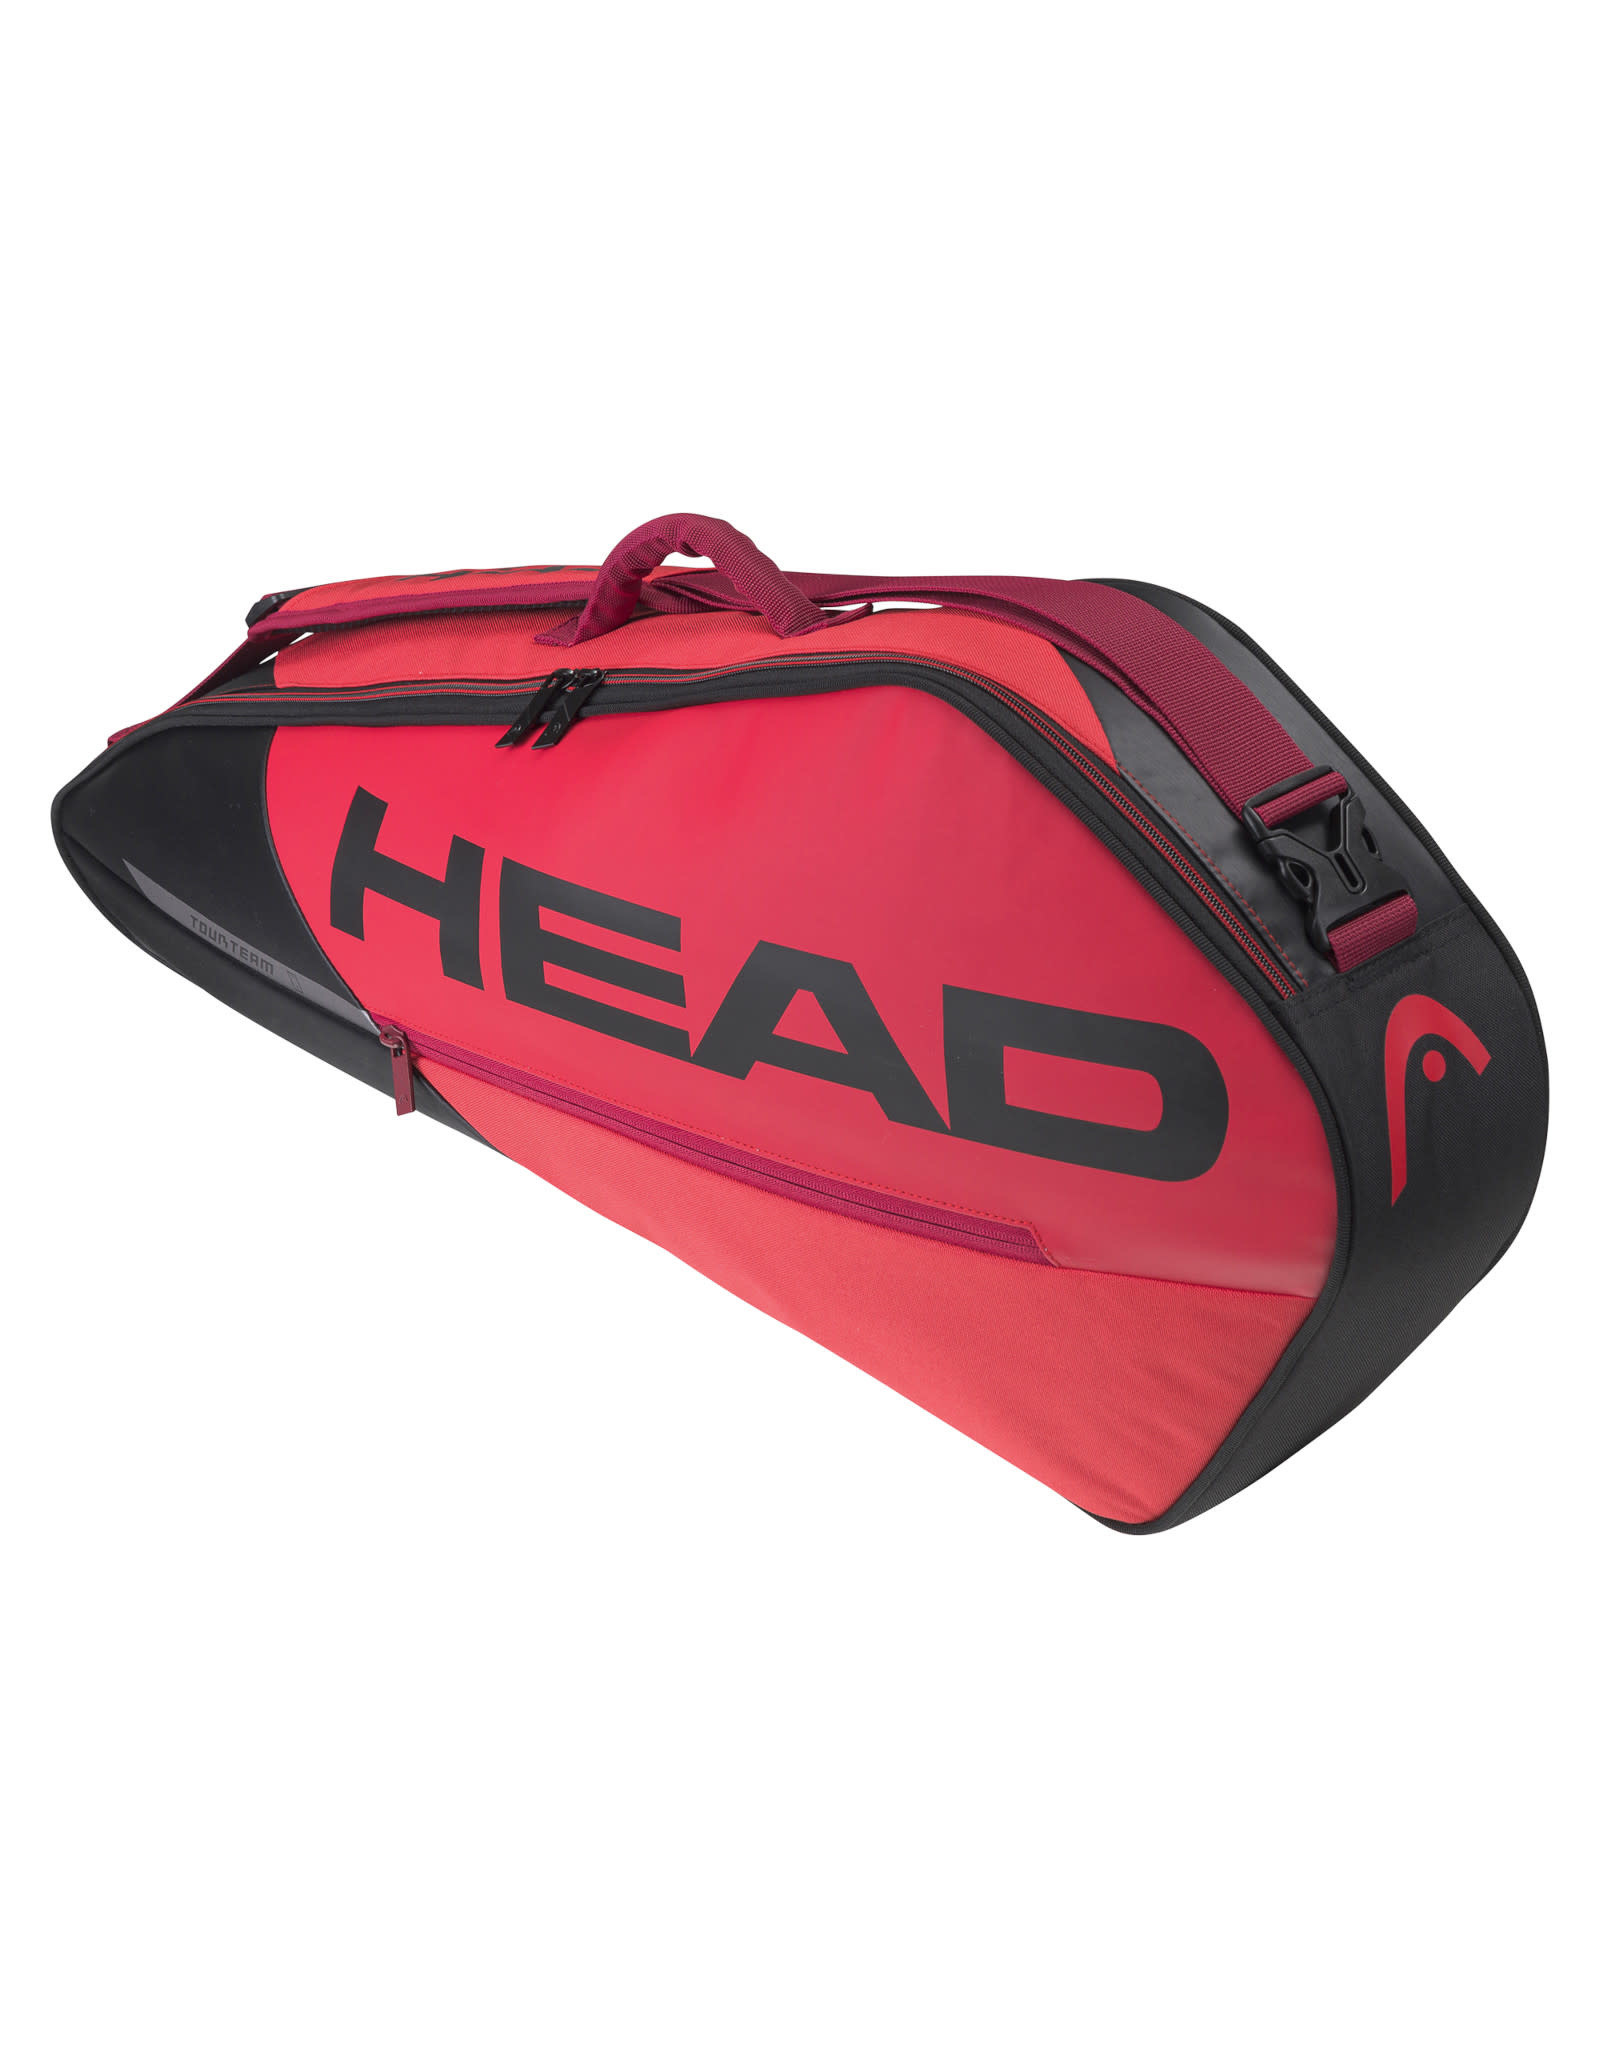 Head Head Tour Team 3R (Black/Red) Tennis Bag